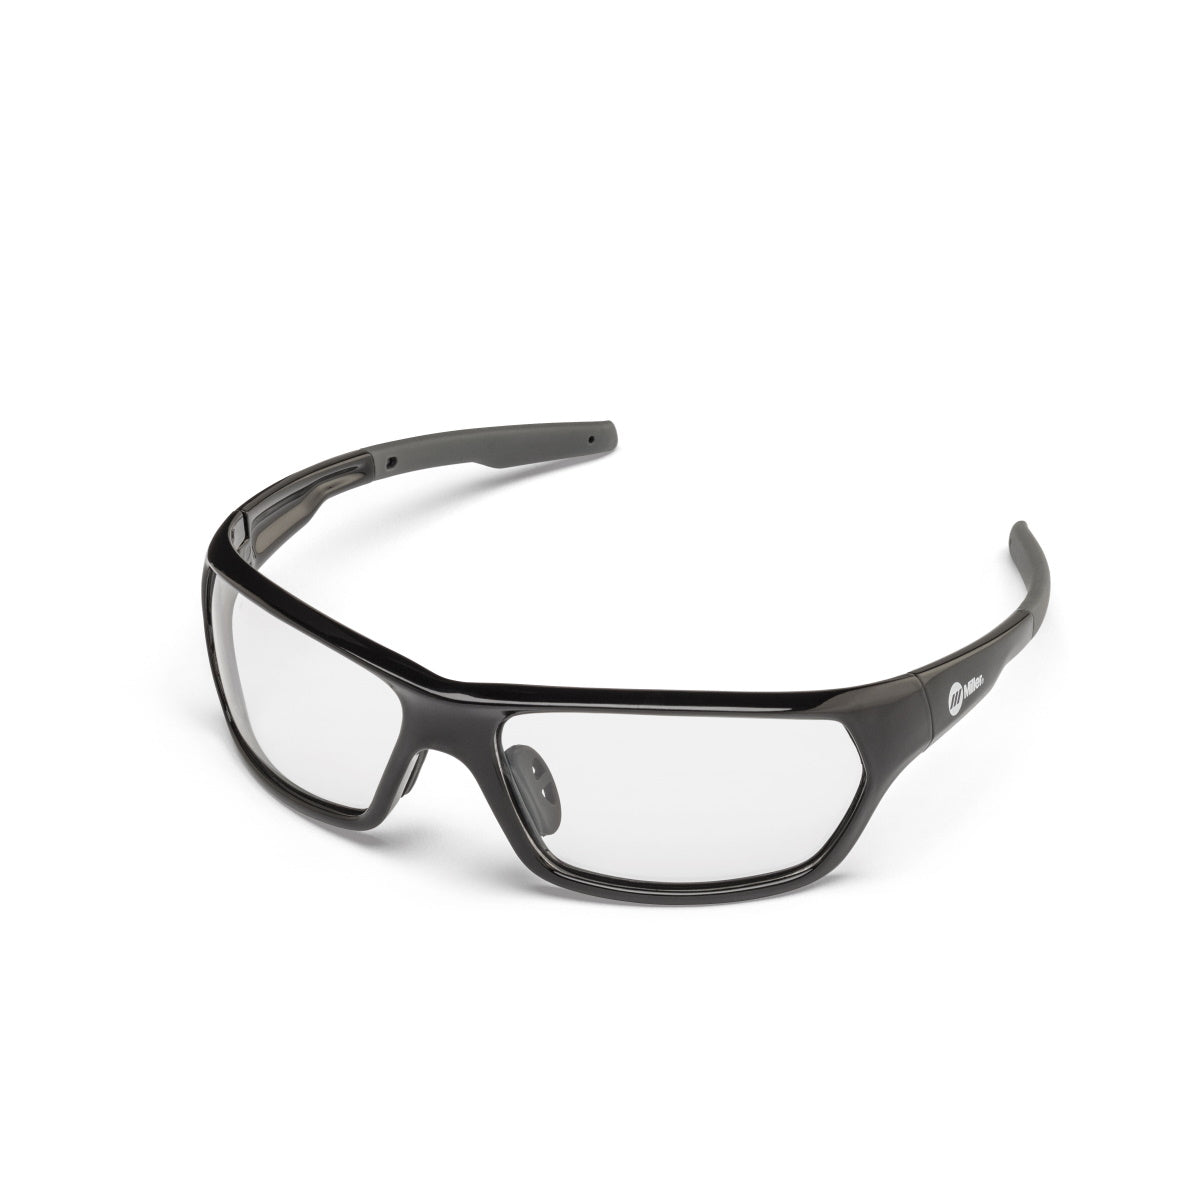 Miller Clear Lens, Black Frame Safety Glasses (272201)